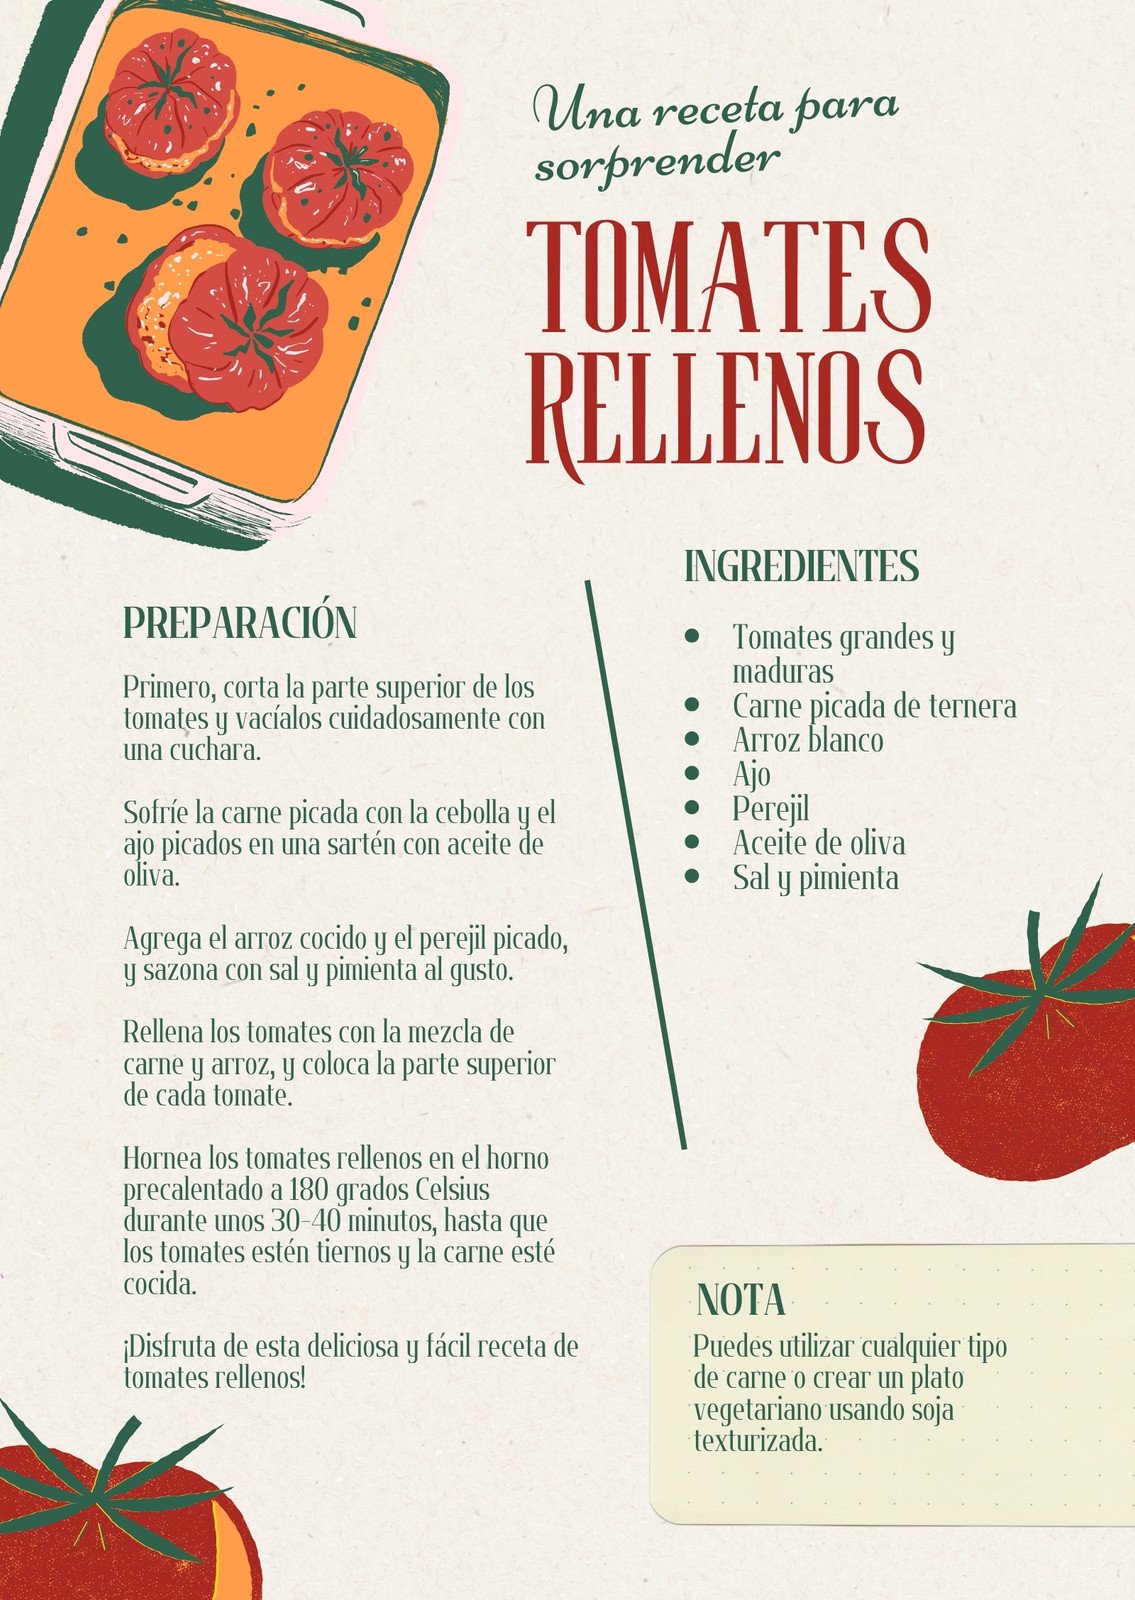 Cuaderno de recetas en blanco: Recetario de cocina en blanco para escribir  tus recetas favoritas, A5 | Libro de recetas personalizado con 100 recetas